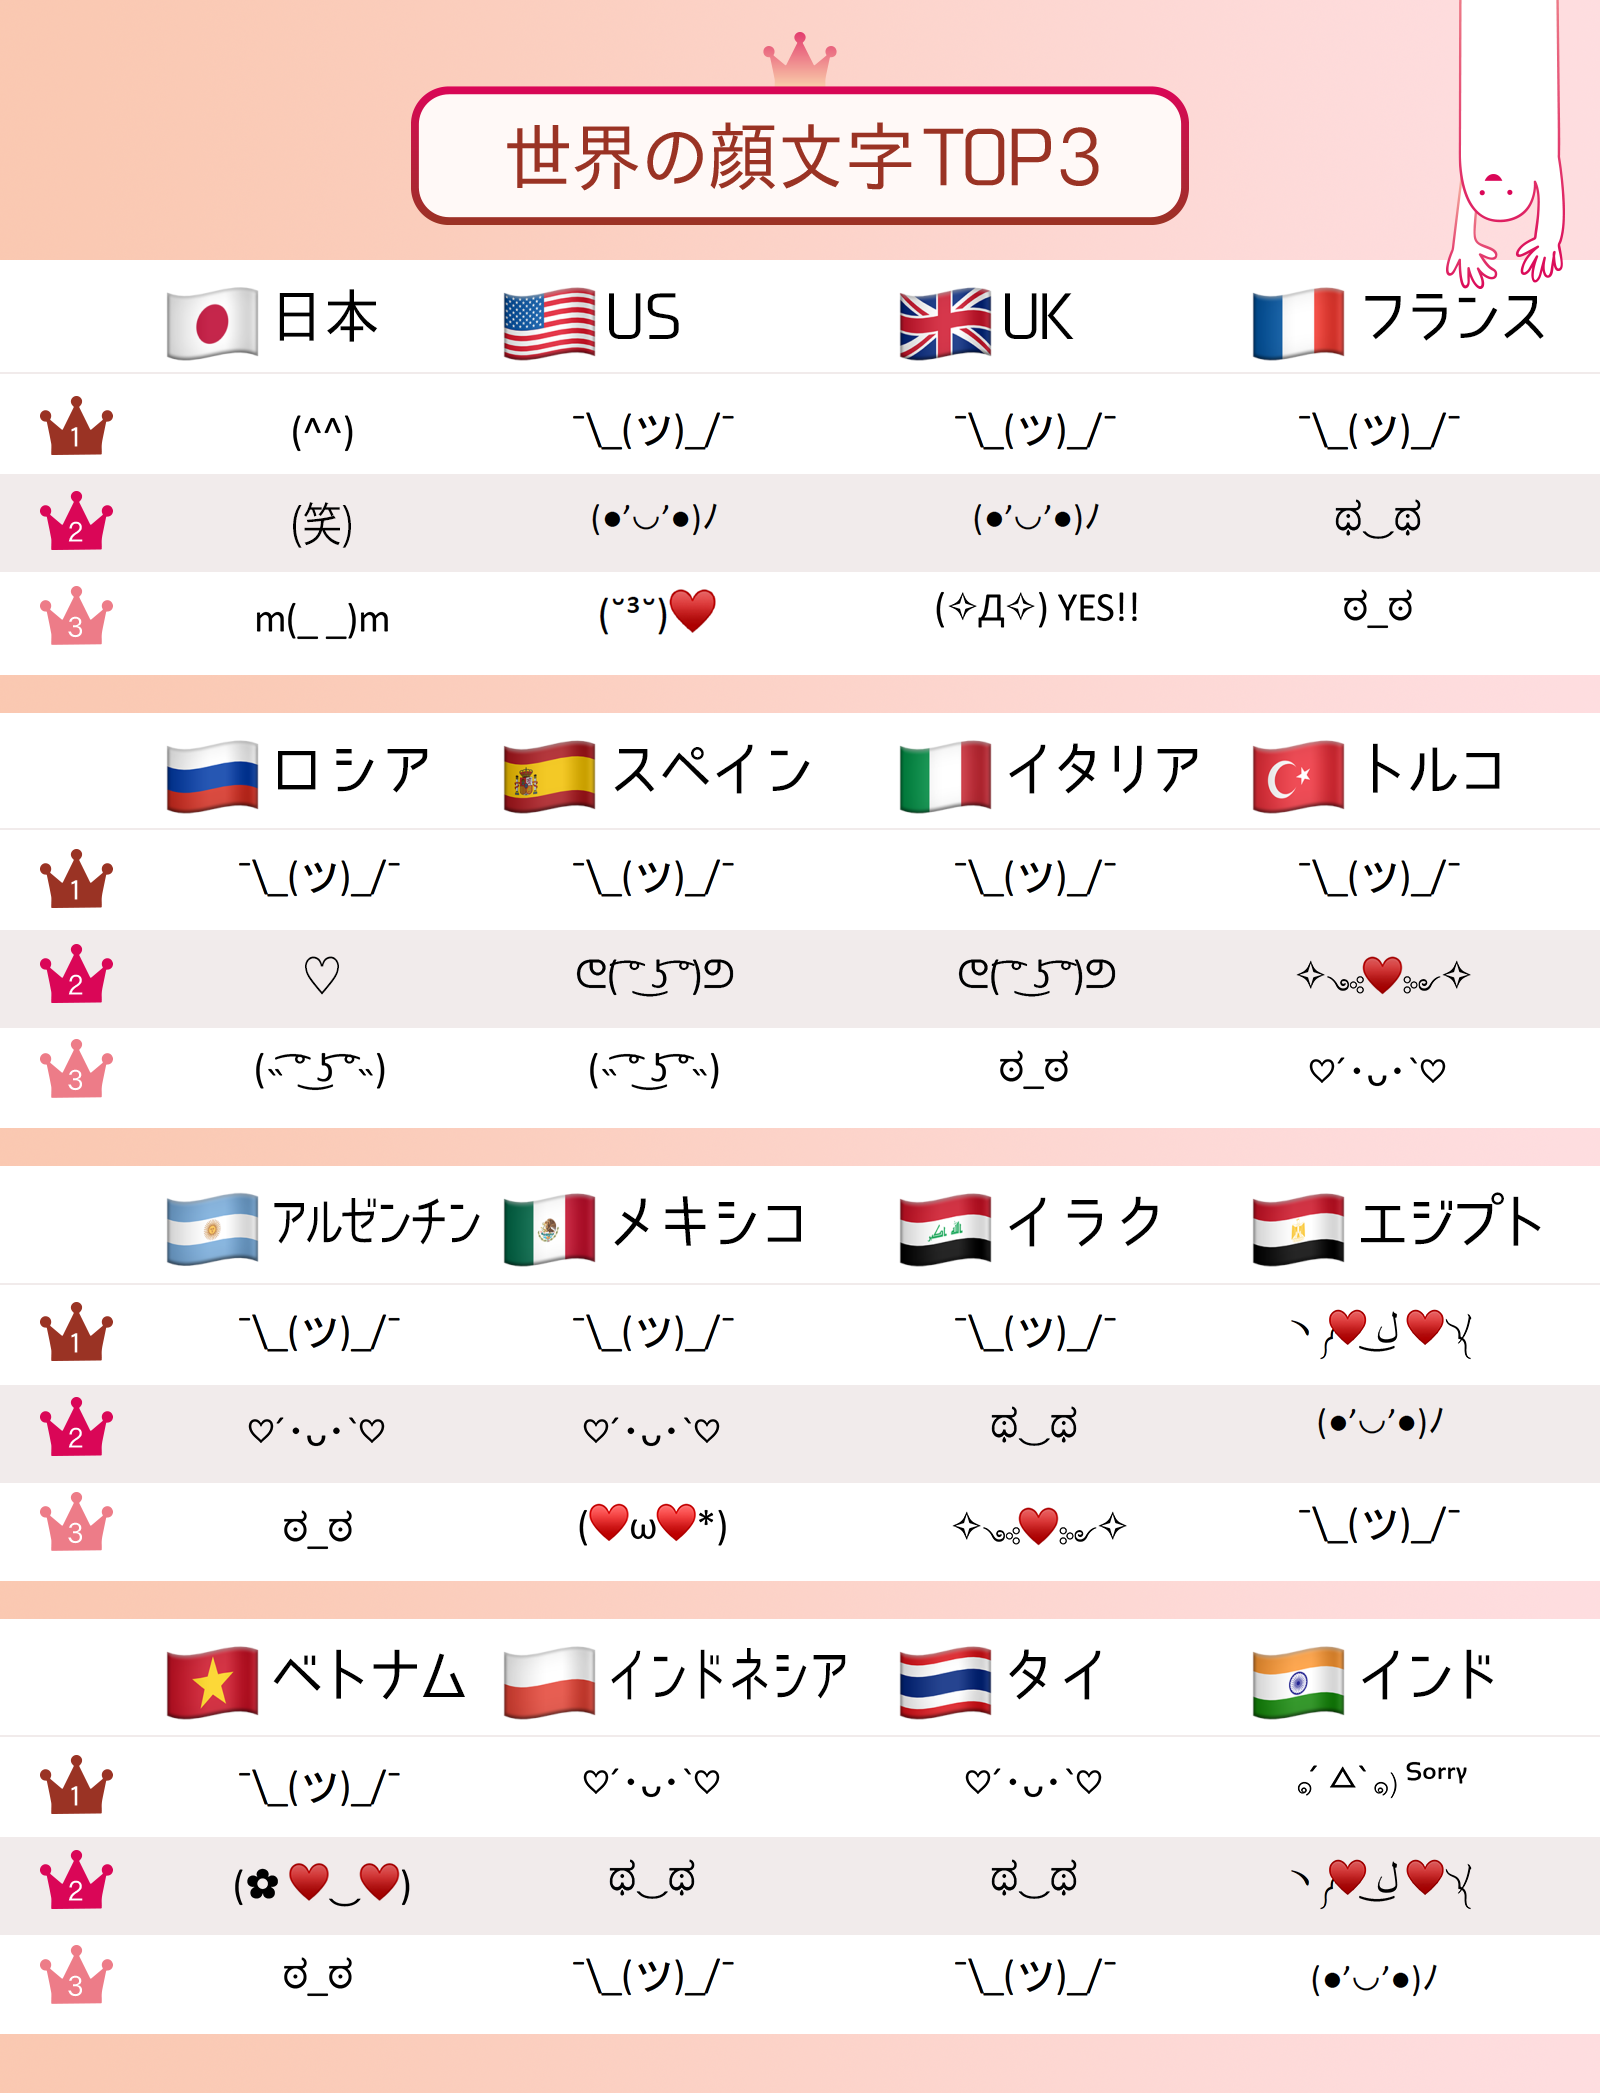 ダウンロードno 1キーボードアプリ Simeji グローバルキーボードアプリ Facemoji Emoji Keyboard と共同で 世界の顔文字top3 を発表 Baidu Japan バイドゥ株式会社